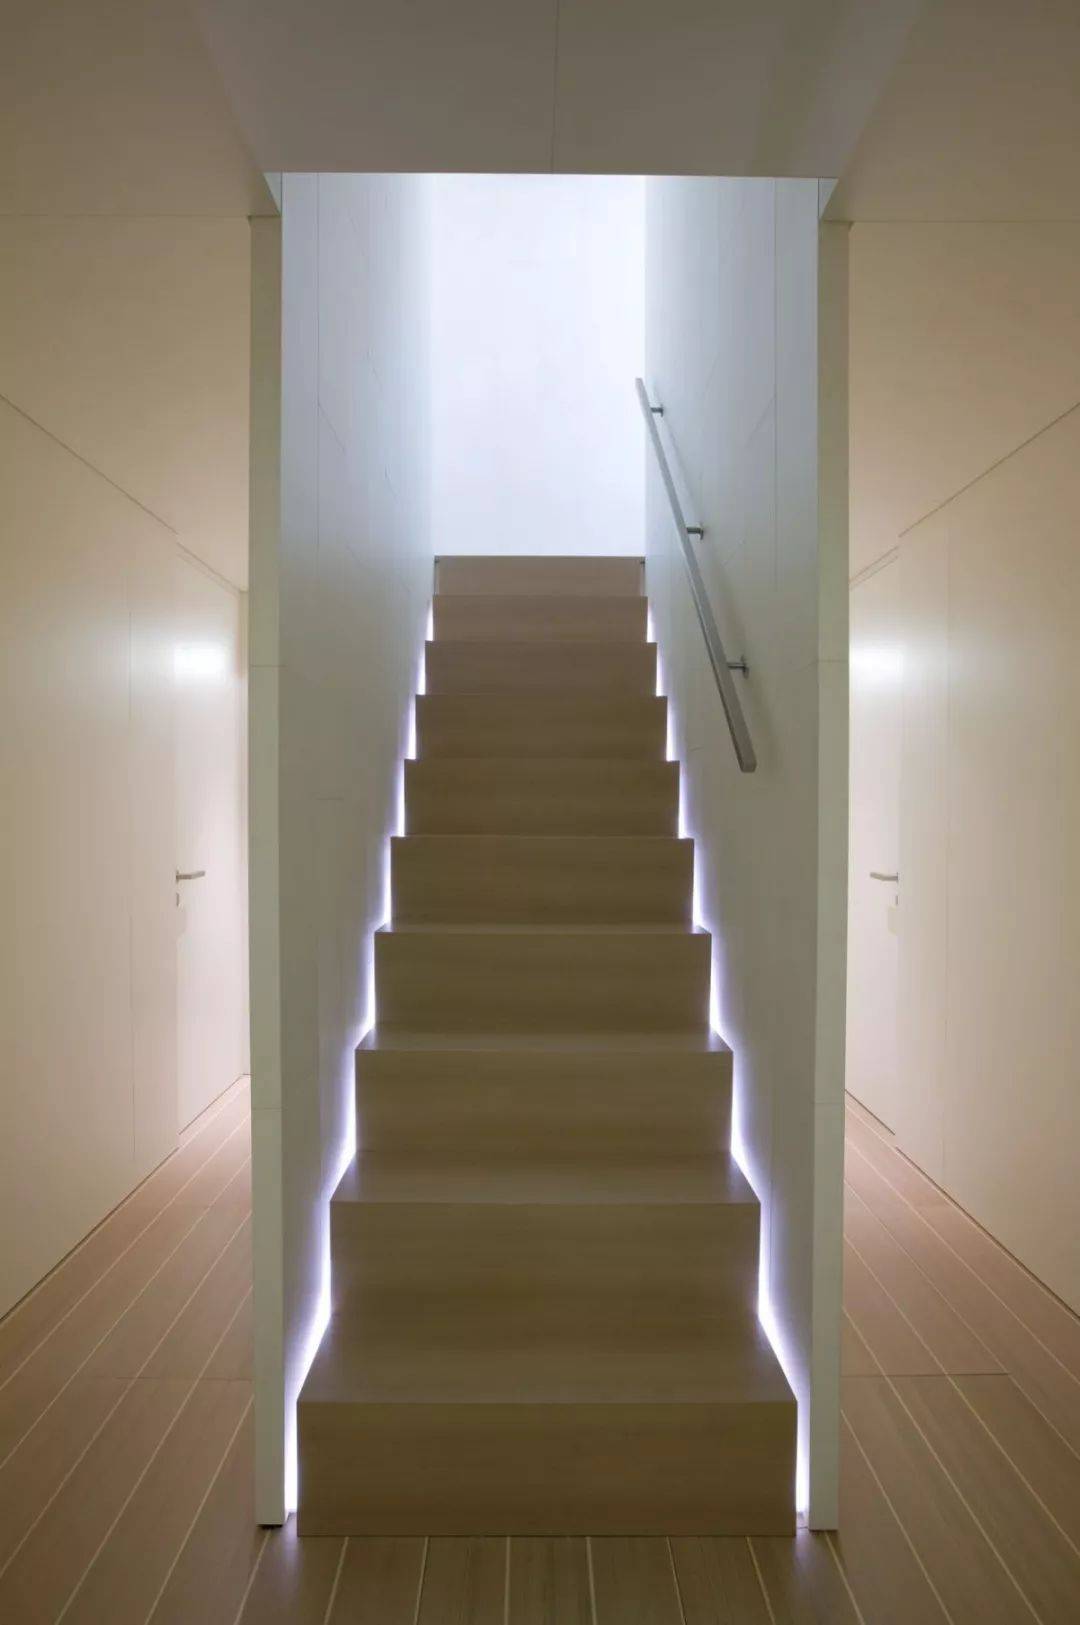 楼梯灯最佳安装位置图图片